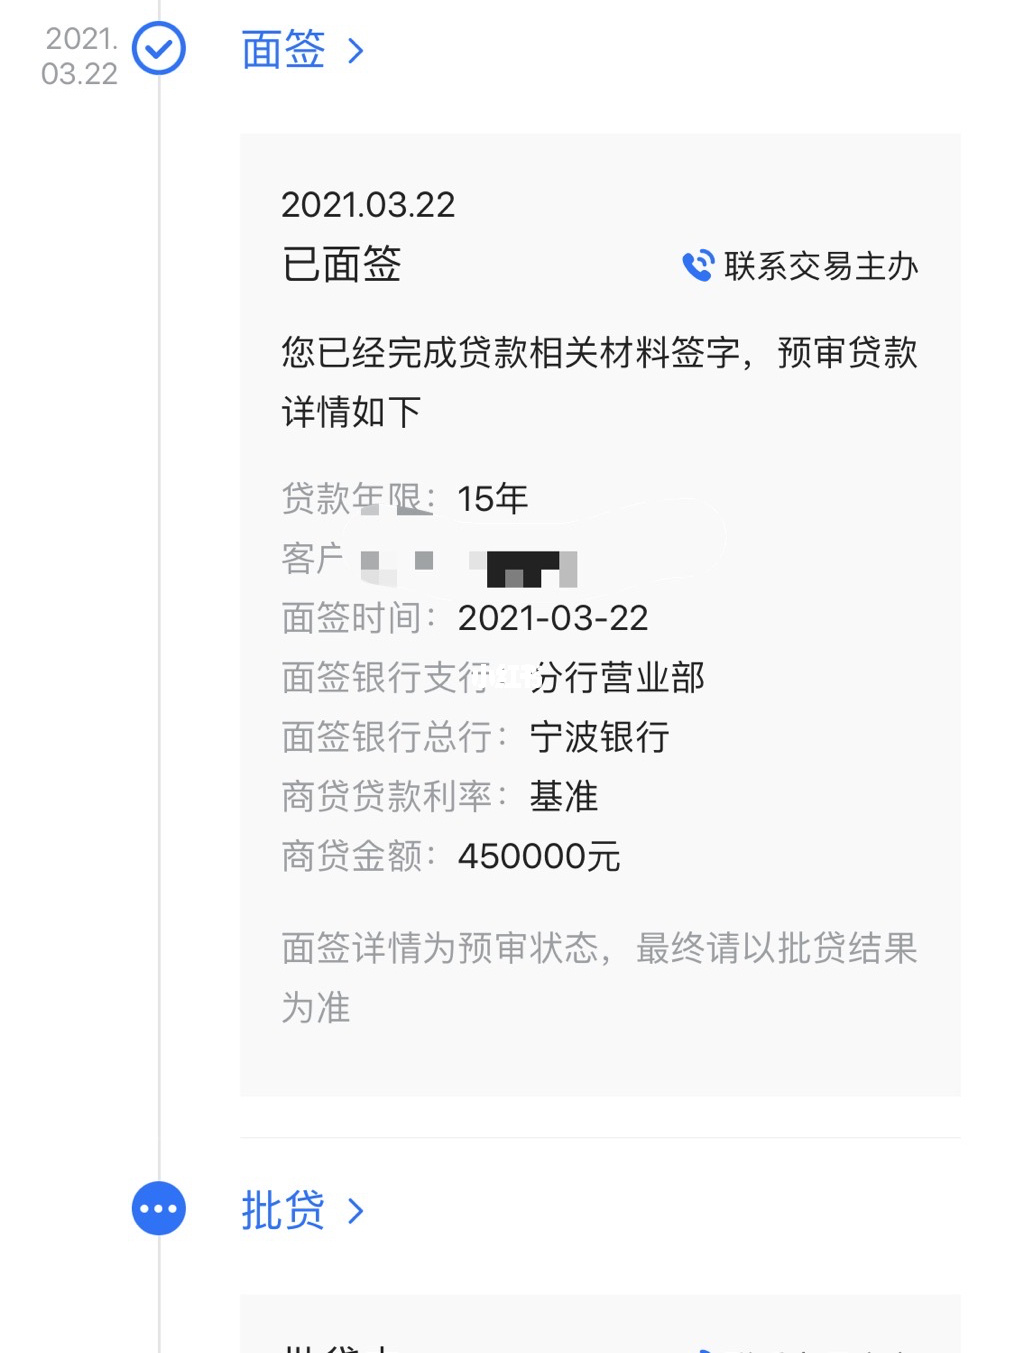 上海 邮政房贷放款时间_上海工行房贷放款时间_2016工行房贷放款时间